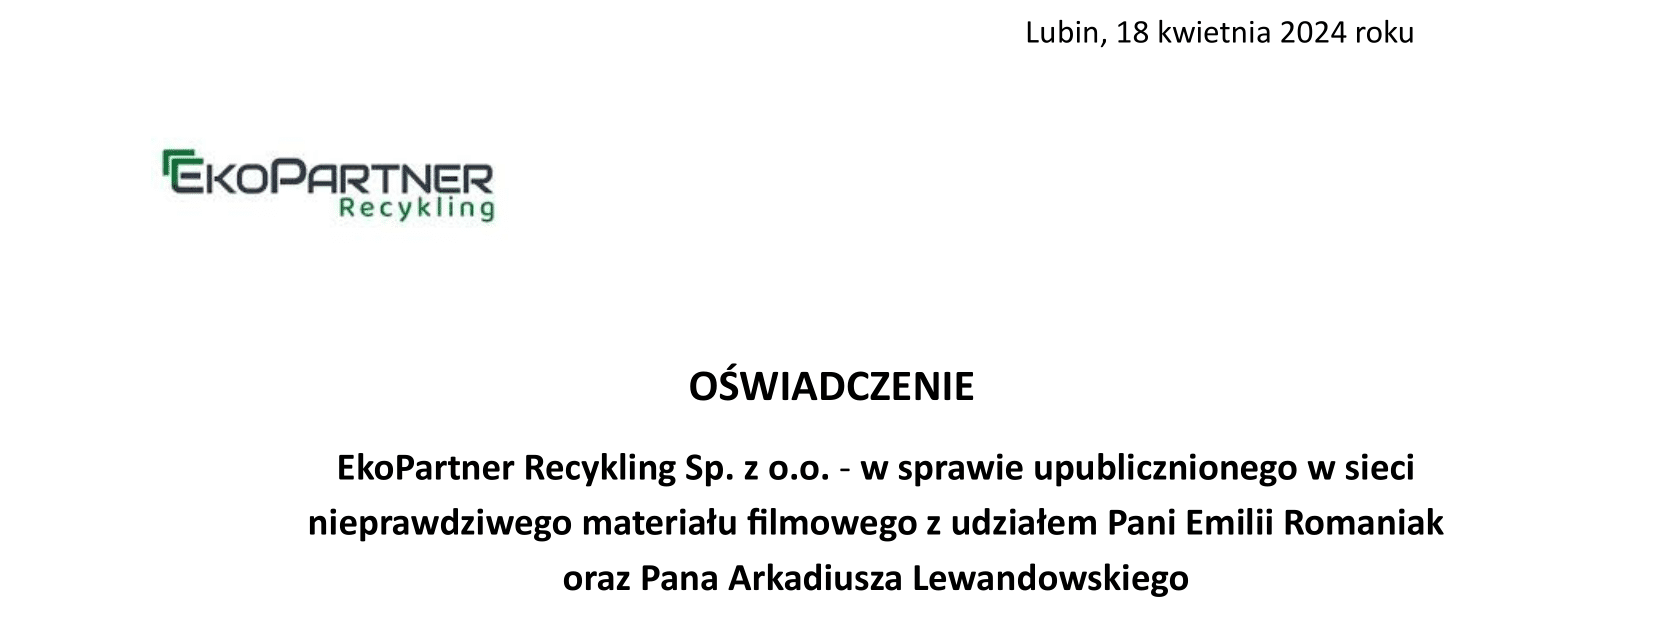 Oświadczenie EkoPartner Recykling Sp. z o.o. - w sprawie upublicznionego w sieci nieprawdziwego materiału filmowego z udziałem Pani Emilii Romaniak oraz Pana Arkadiusza Lewandowskiego